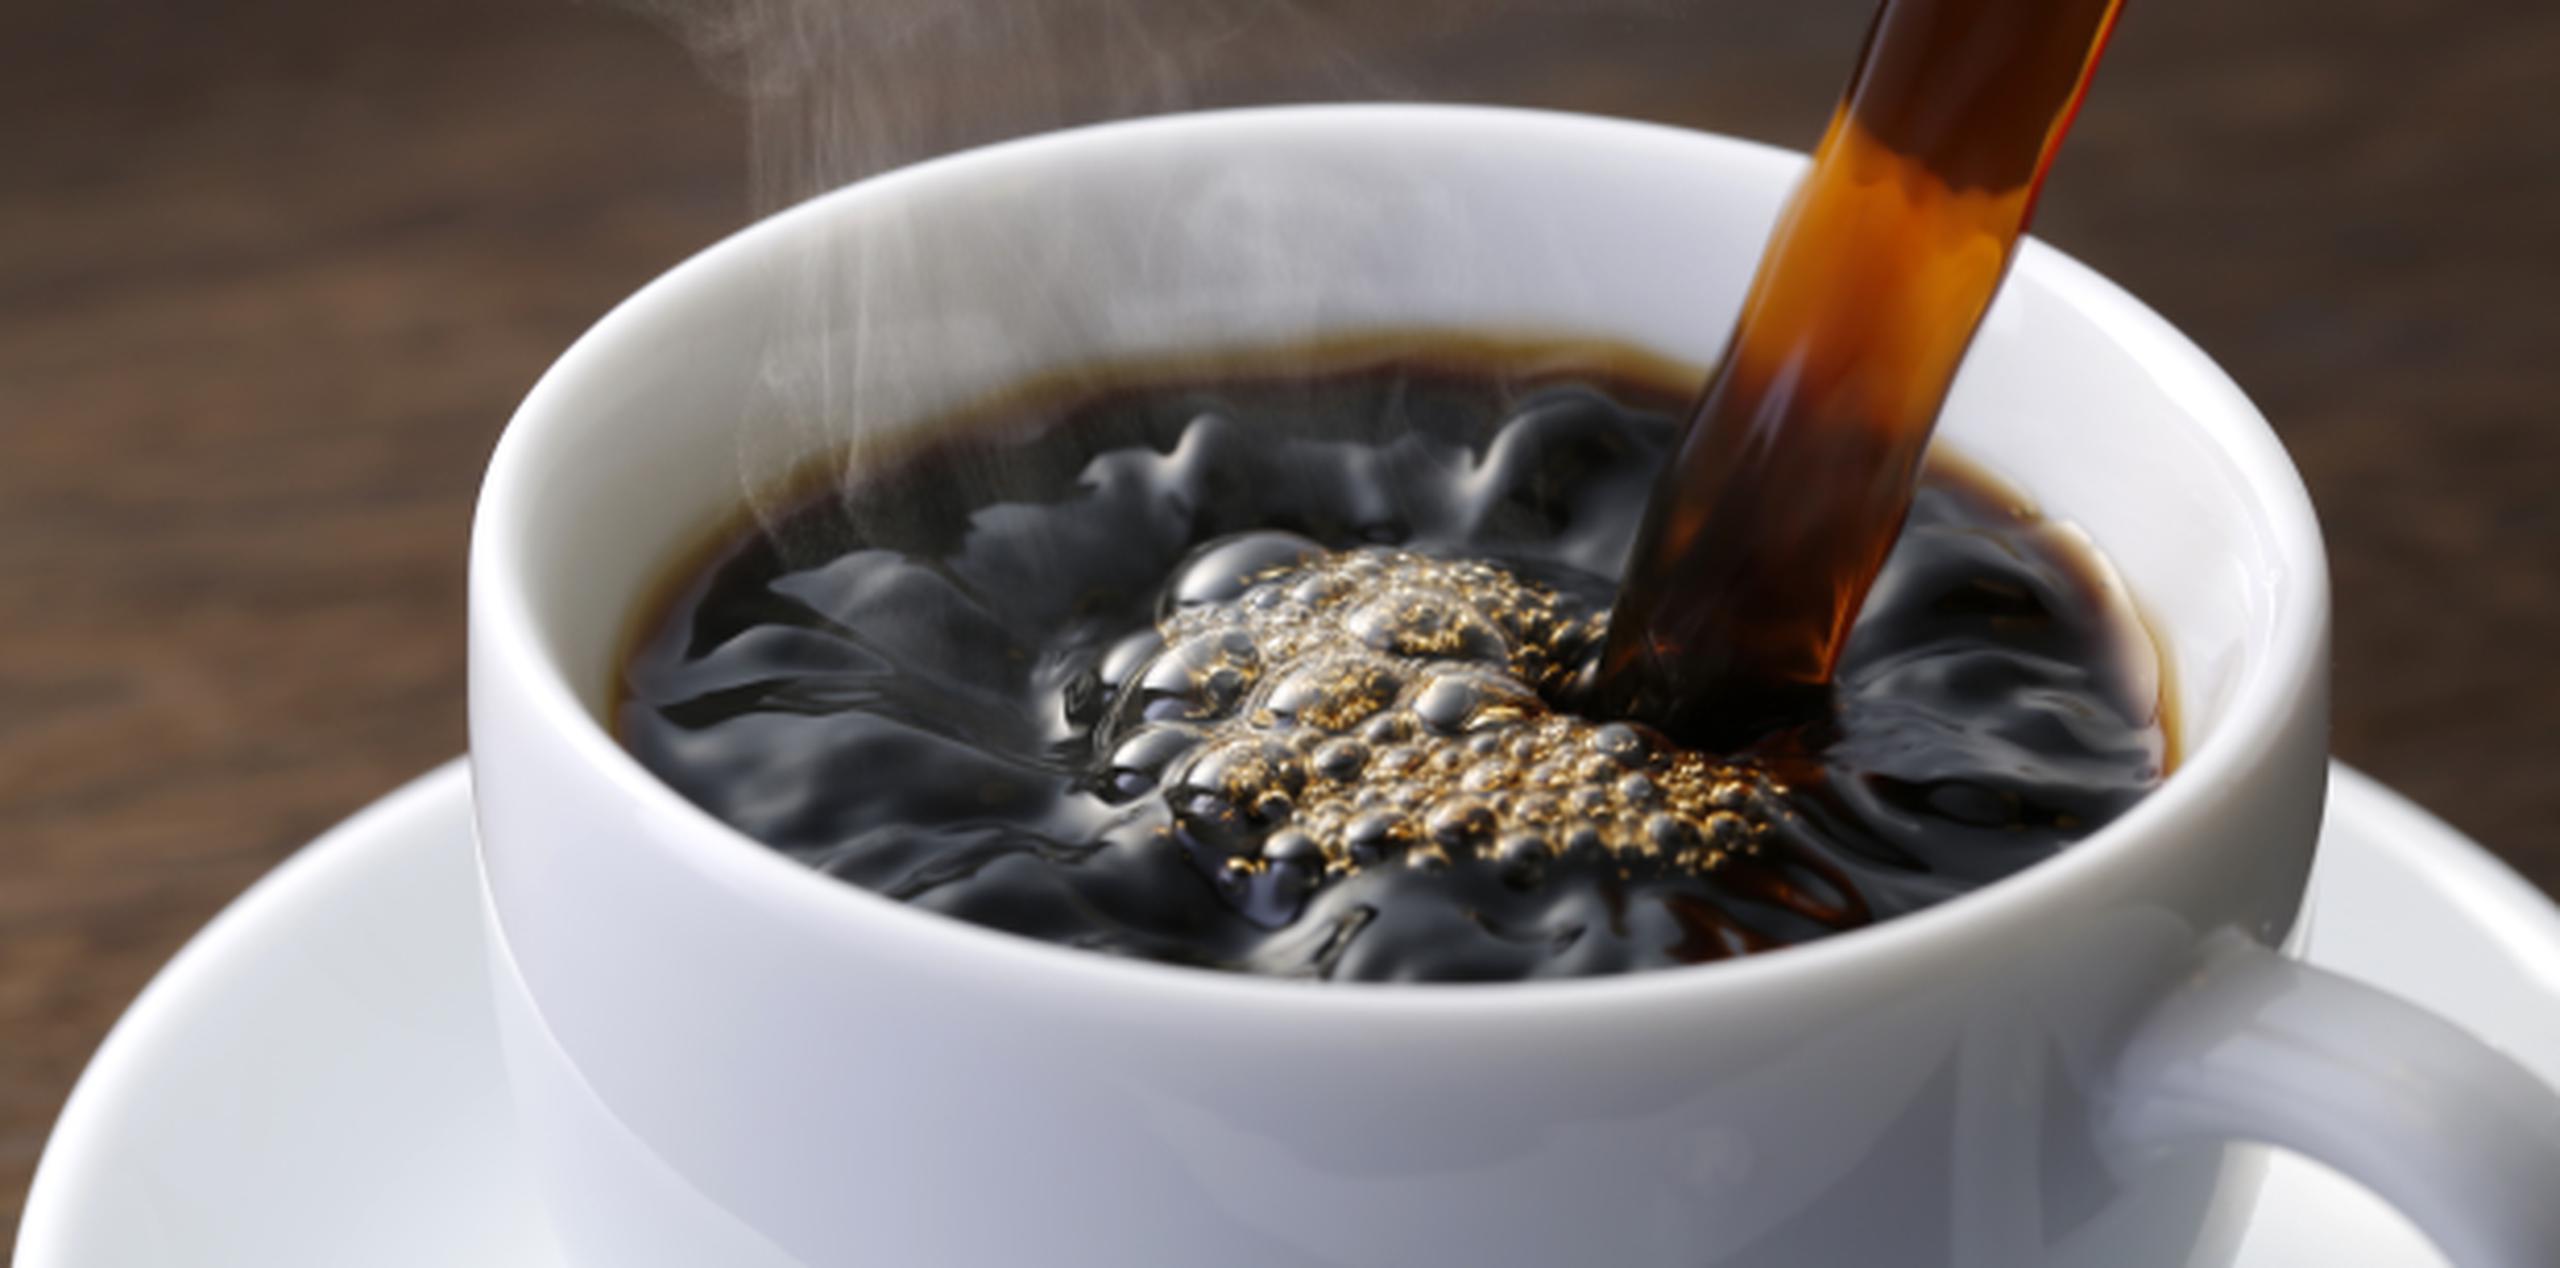 La recomendación de los profesionales de salud es que el café se consuma luego de ingerir alimentos sólidos. (Shutterstock)